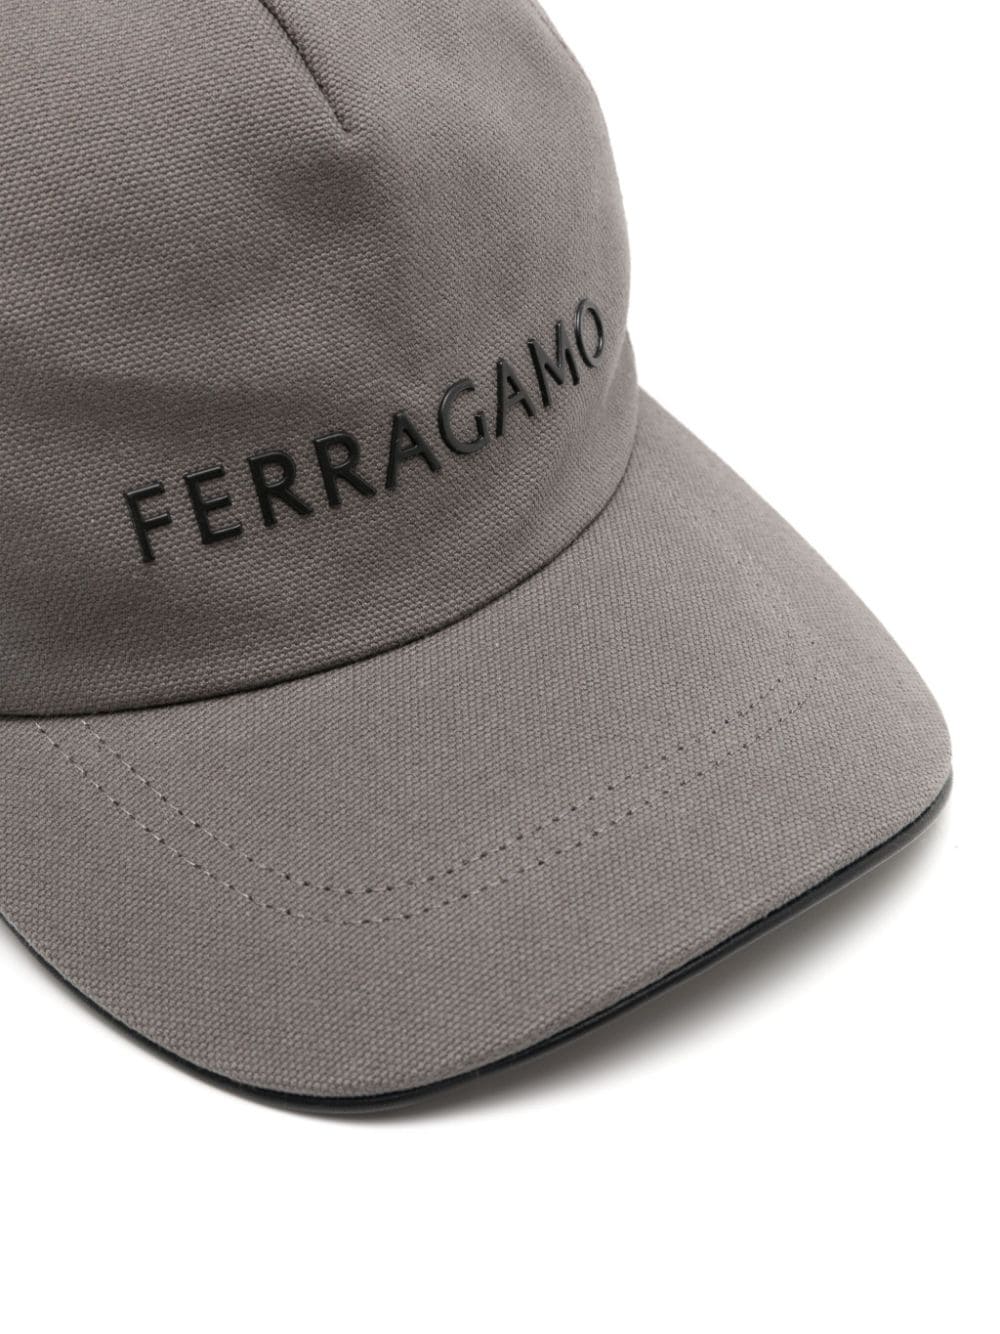 Image 2 of Ferragamo logo-rubberized canvas cotton cap